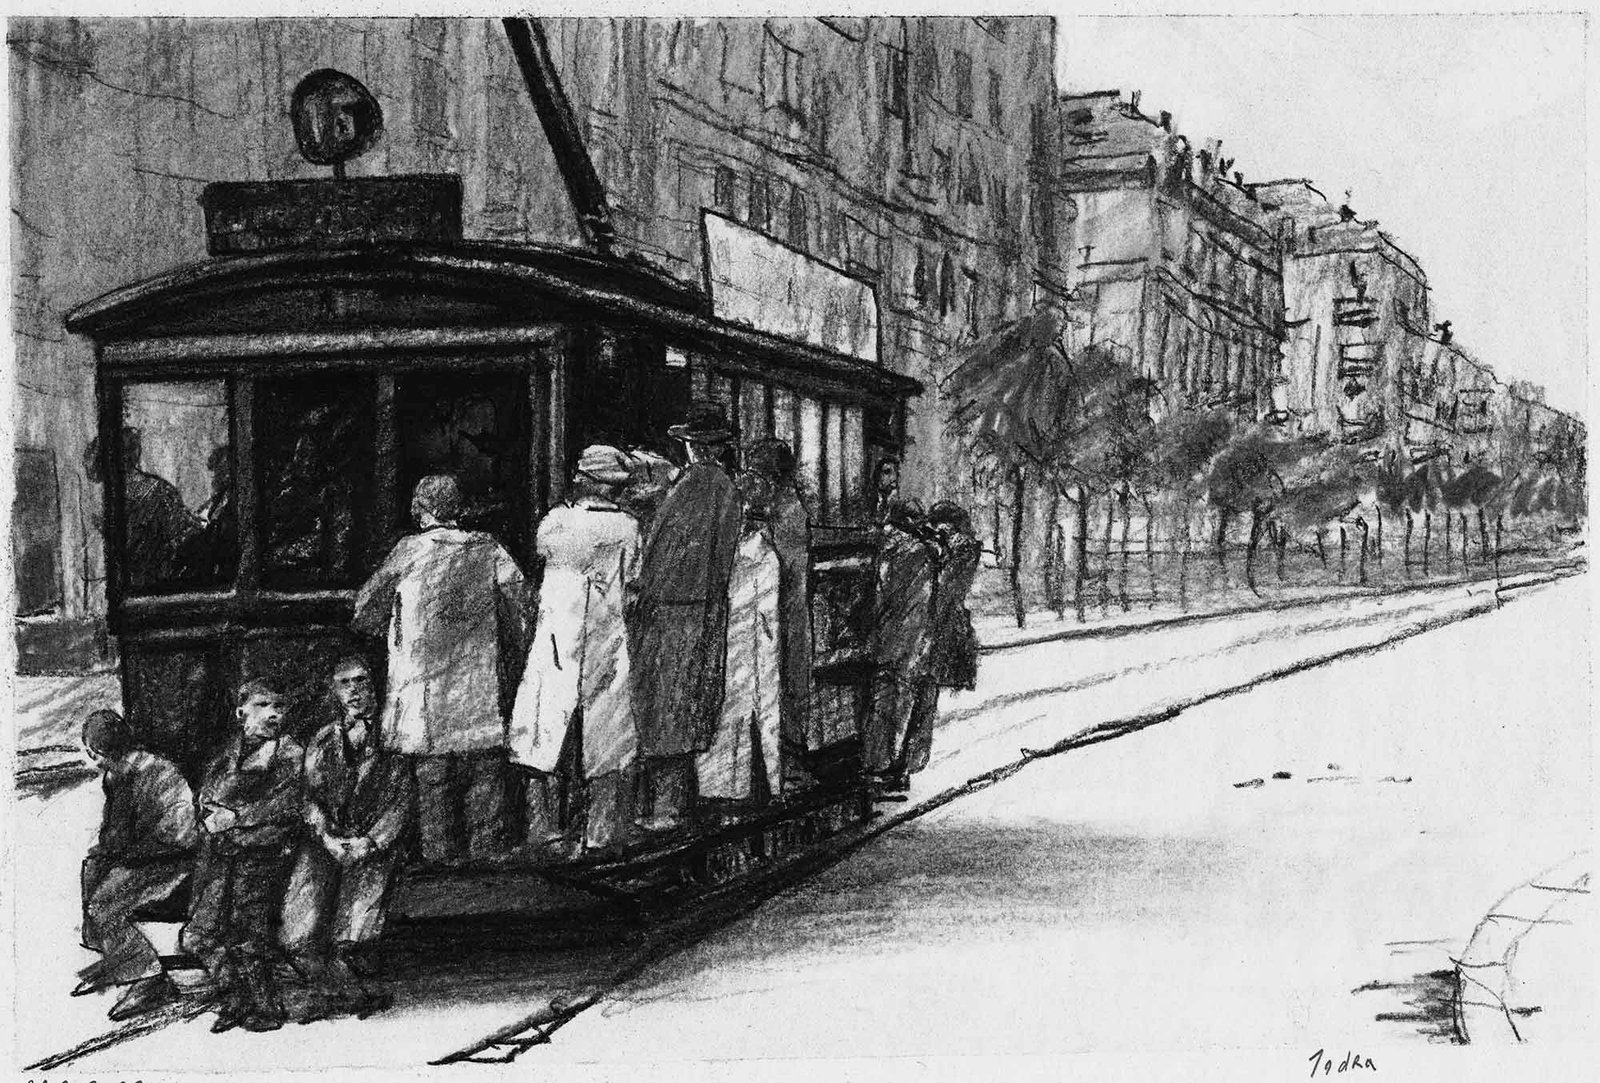 Tranvía de la línea 15 en la calle Santa Engracia. Charcoal on paper, by Mario Jodra.